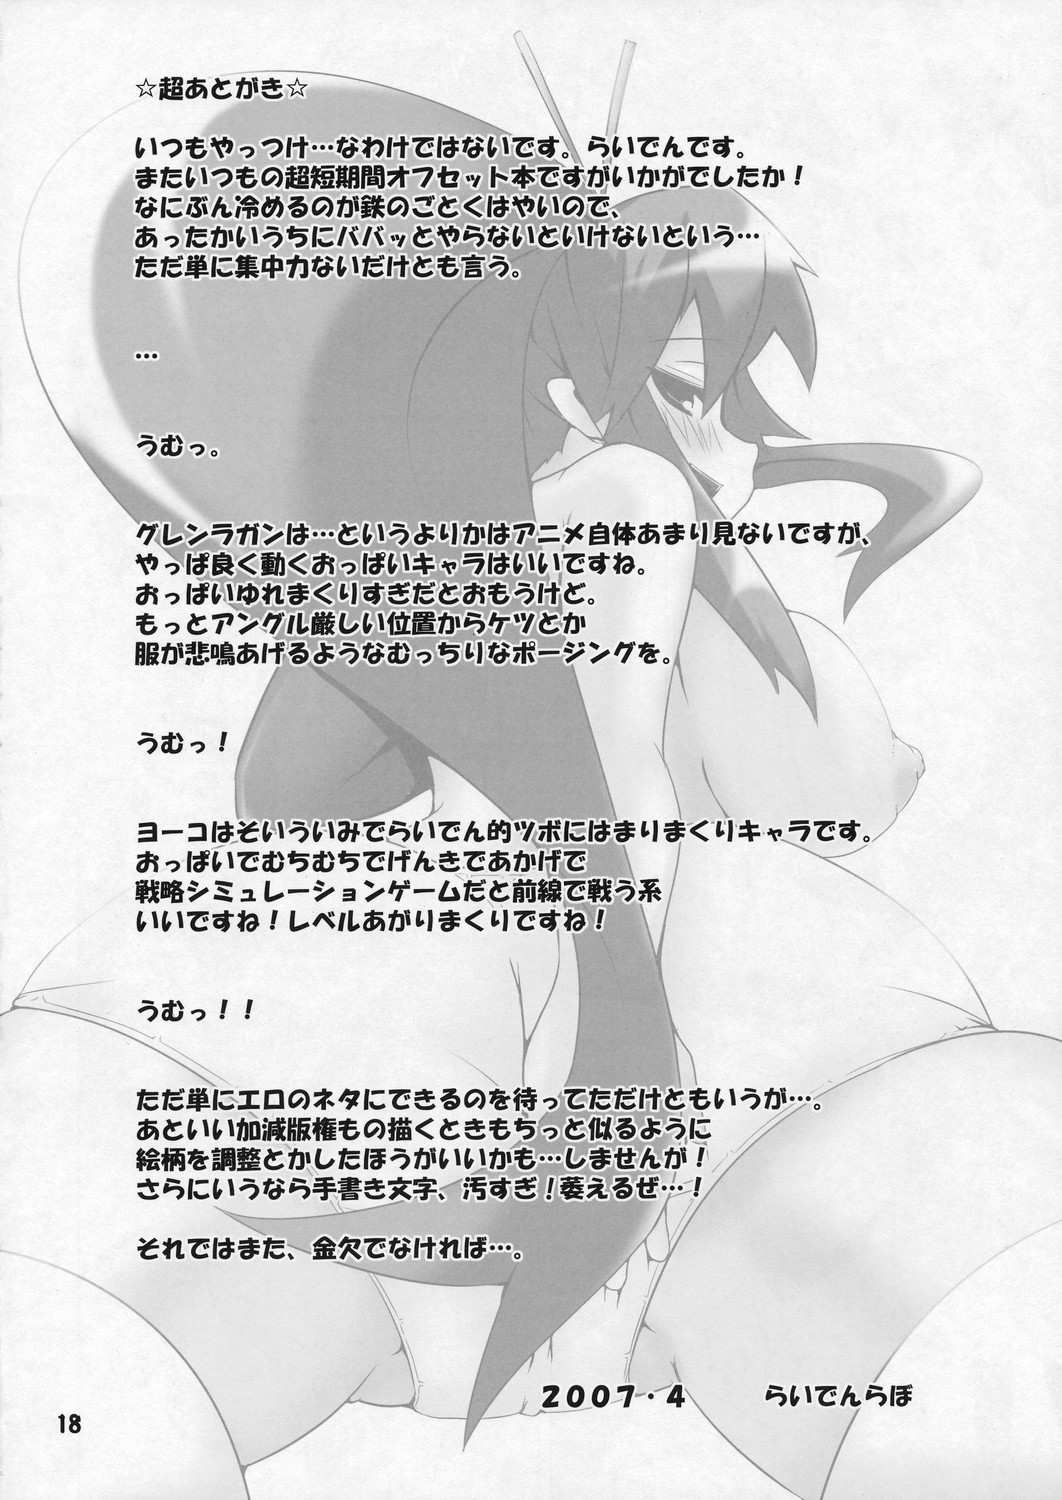 (COMIC1) [Raiden Labo (Raiden)] Omae no Drill de Chitsuoku o Tsuke! (Tengen Toppa Gurren Lagann) page 18 full